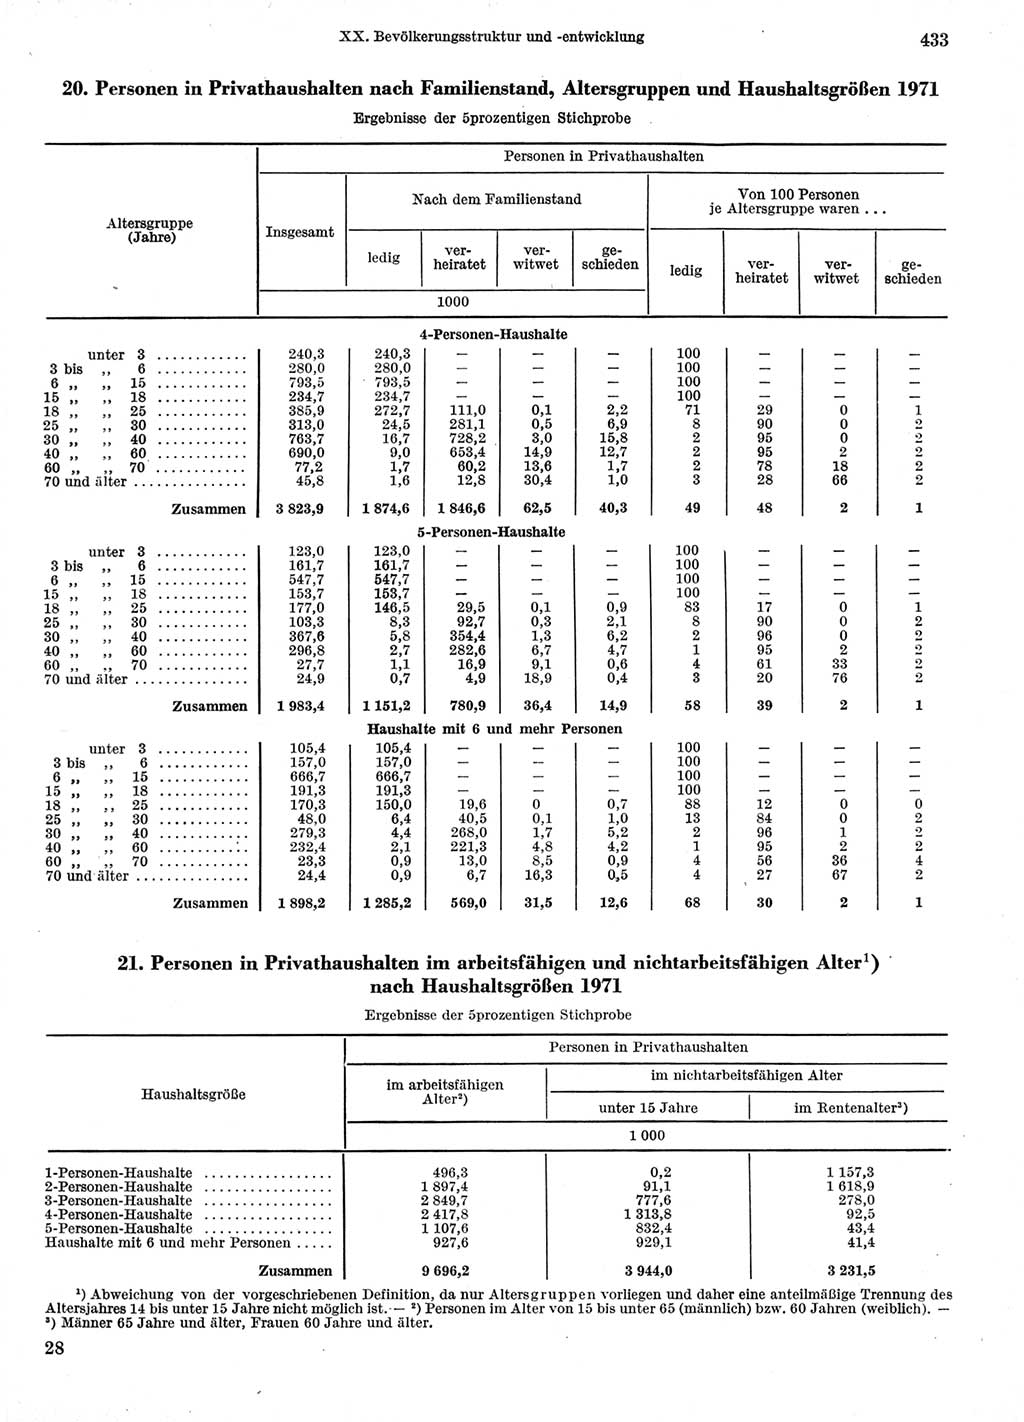 Statistisches Jahrbuch der Deutschen Demokratischen Republik (DDR) 1974, Seite 433 (Stat. Jb. DDR 1974, S. 433)